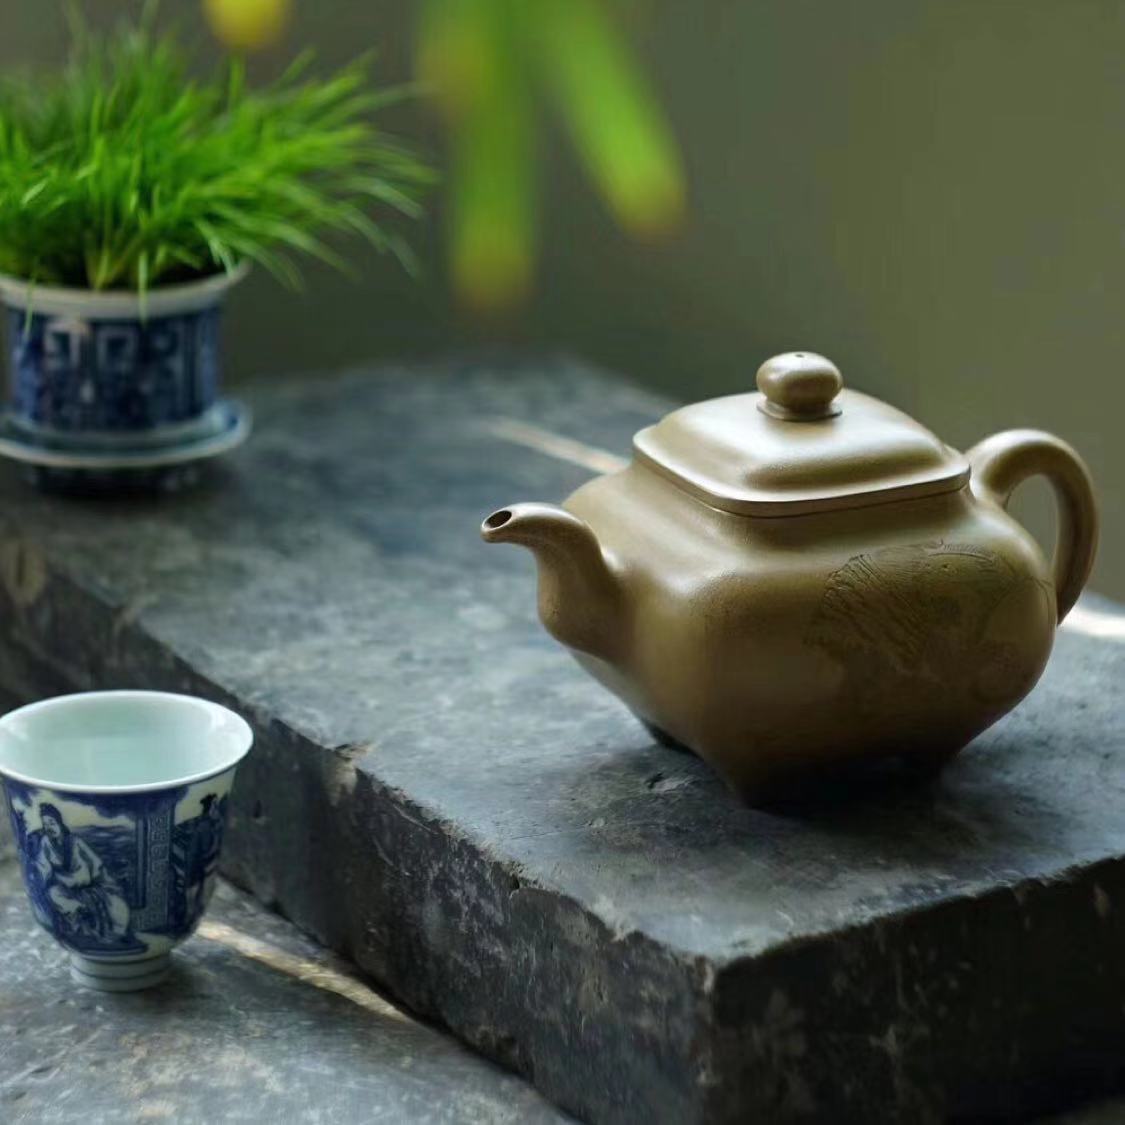 生活的最高境界就是，一茶一壶，悠闲自得，喝喝茶聊聊天.......(图1)